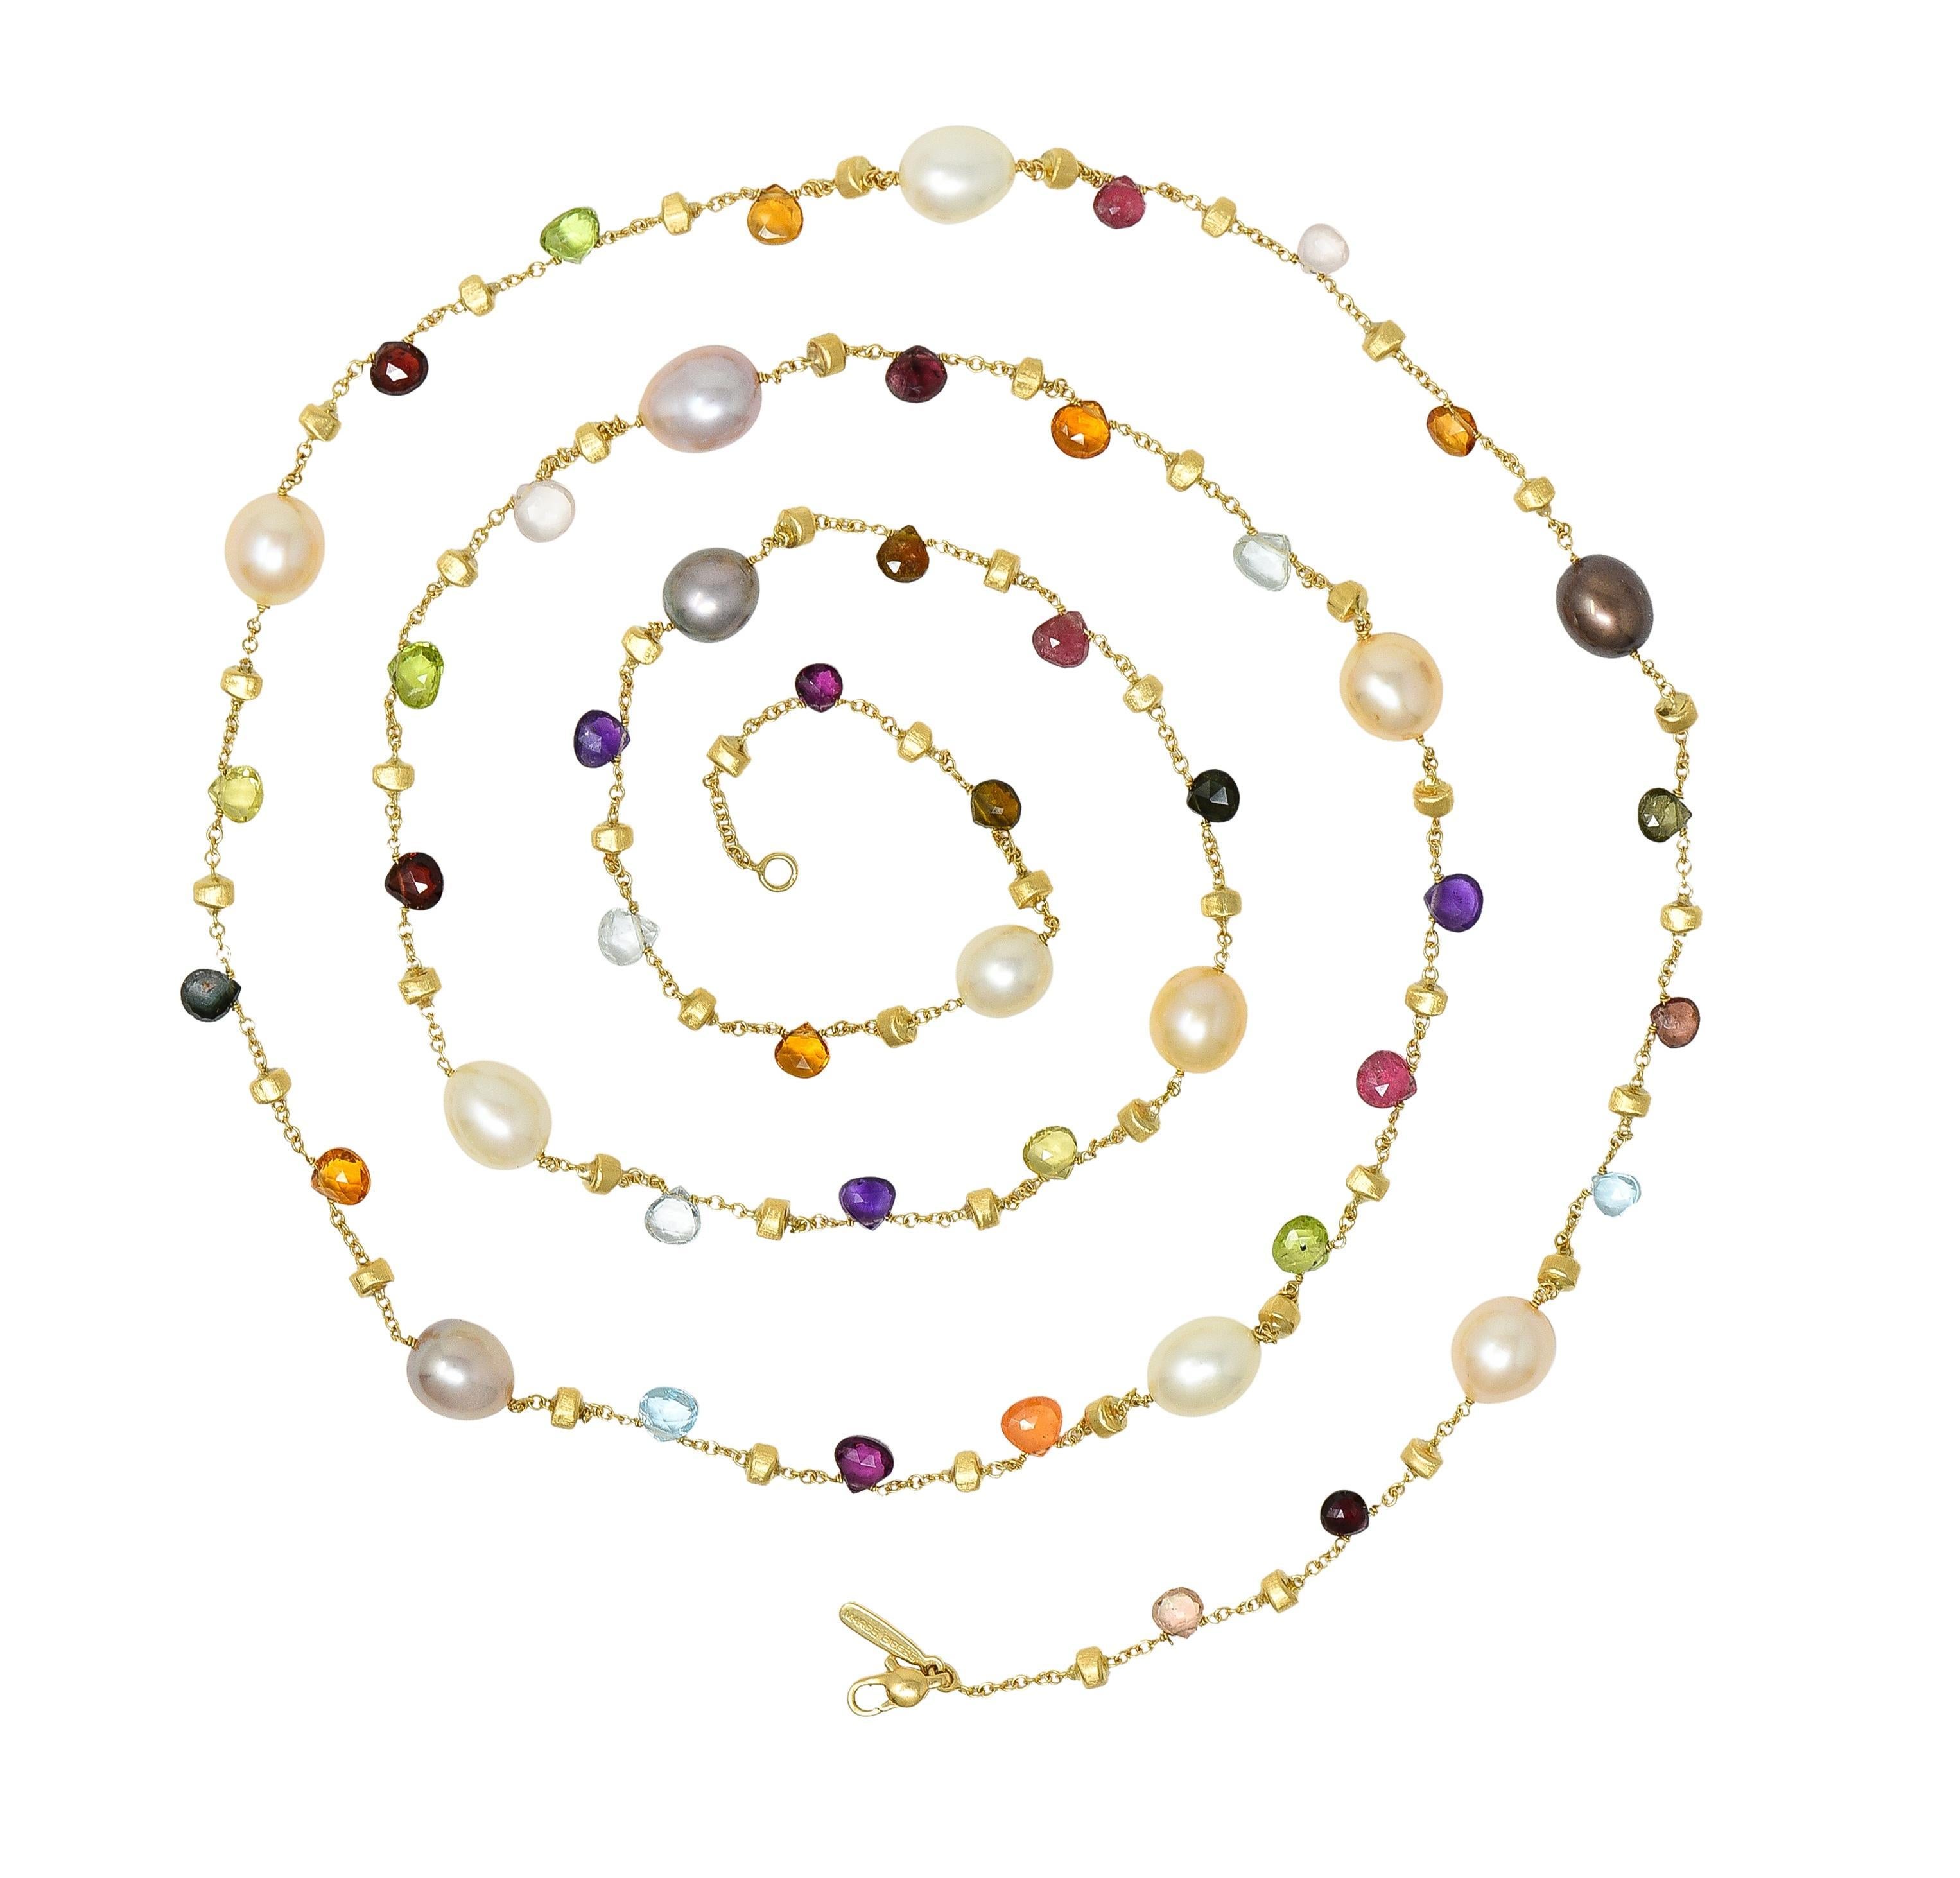 Douze stations de perles de culture de forme baroque de 8 à 9 mm de diamètre
Blanc, pêche, rose et noir dans la couleur du corps avec une forte iridescence et un excellent lustre.
Perles briolettes d'améthyste, de citrine, de péridot, de tourmaline,